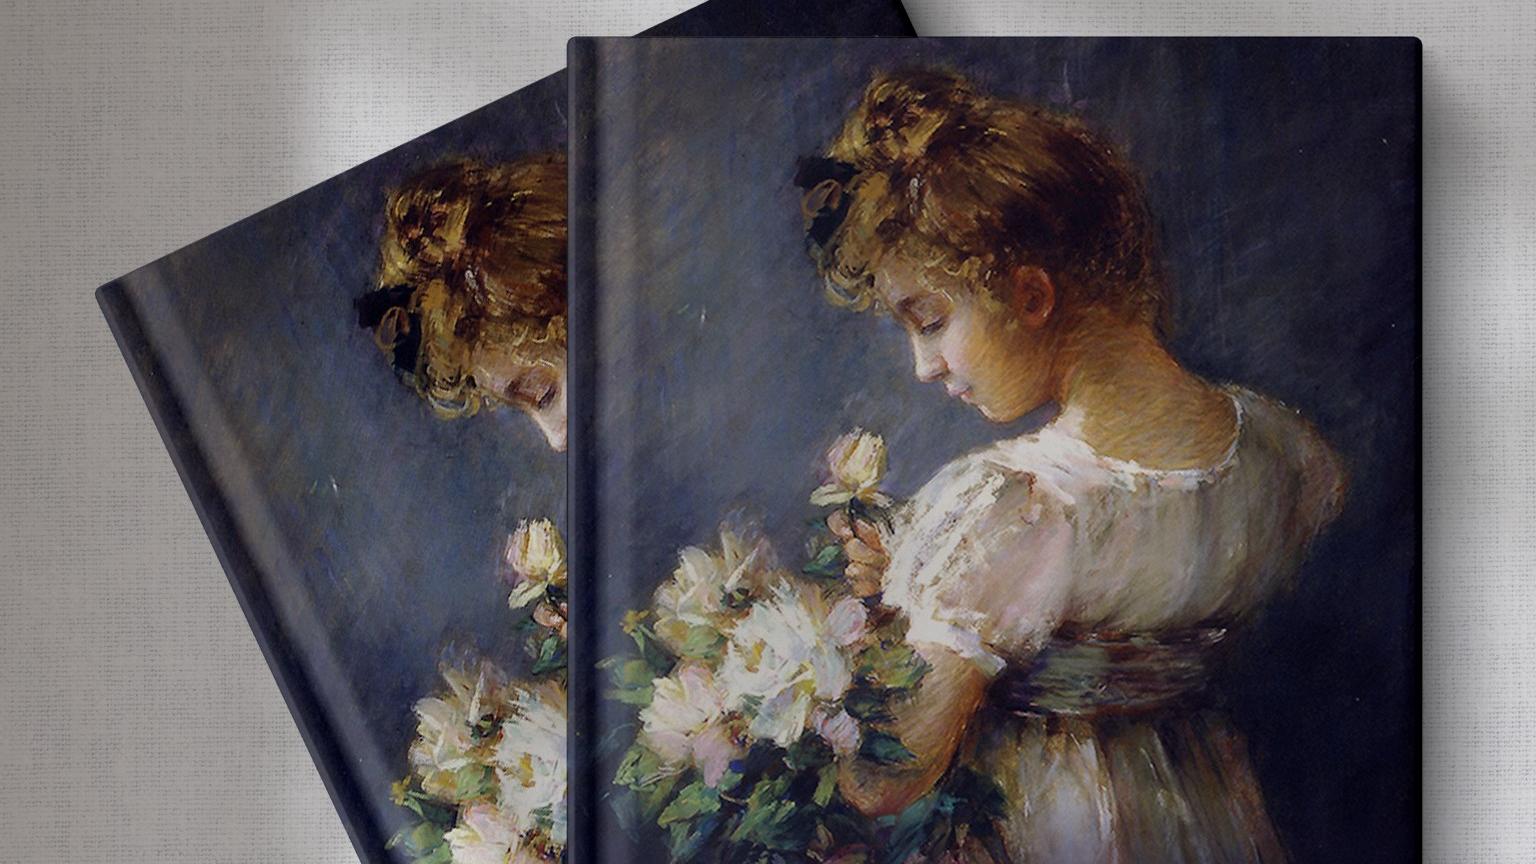 Libro con una pintura de una niña vestida de blanco en la portada